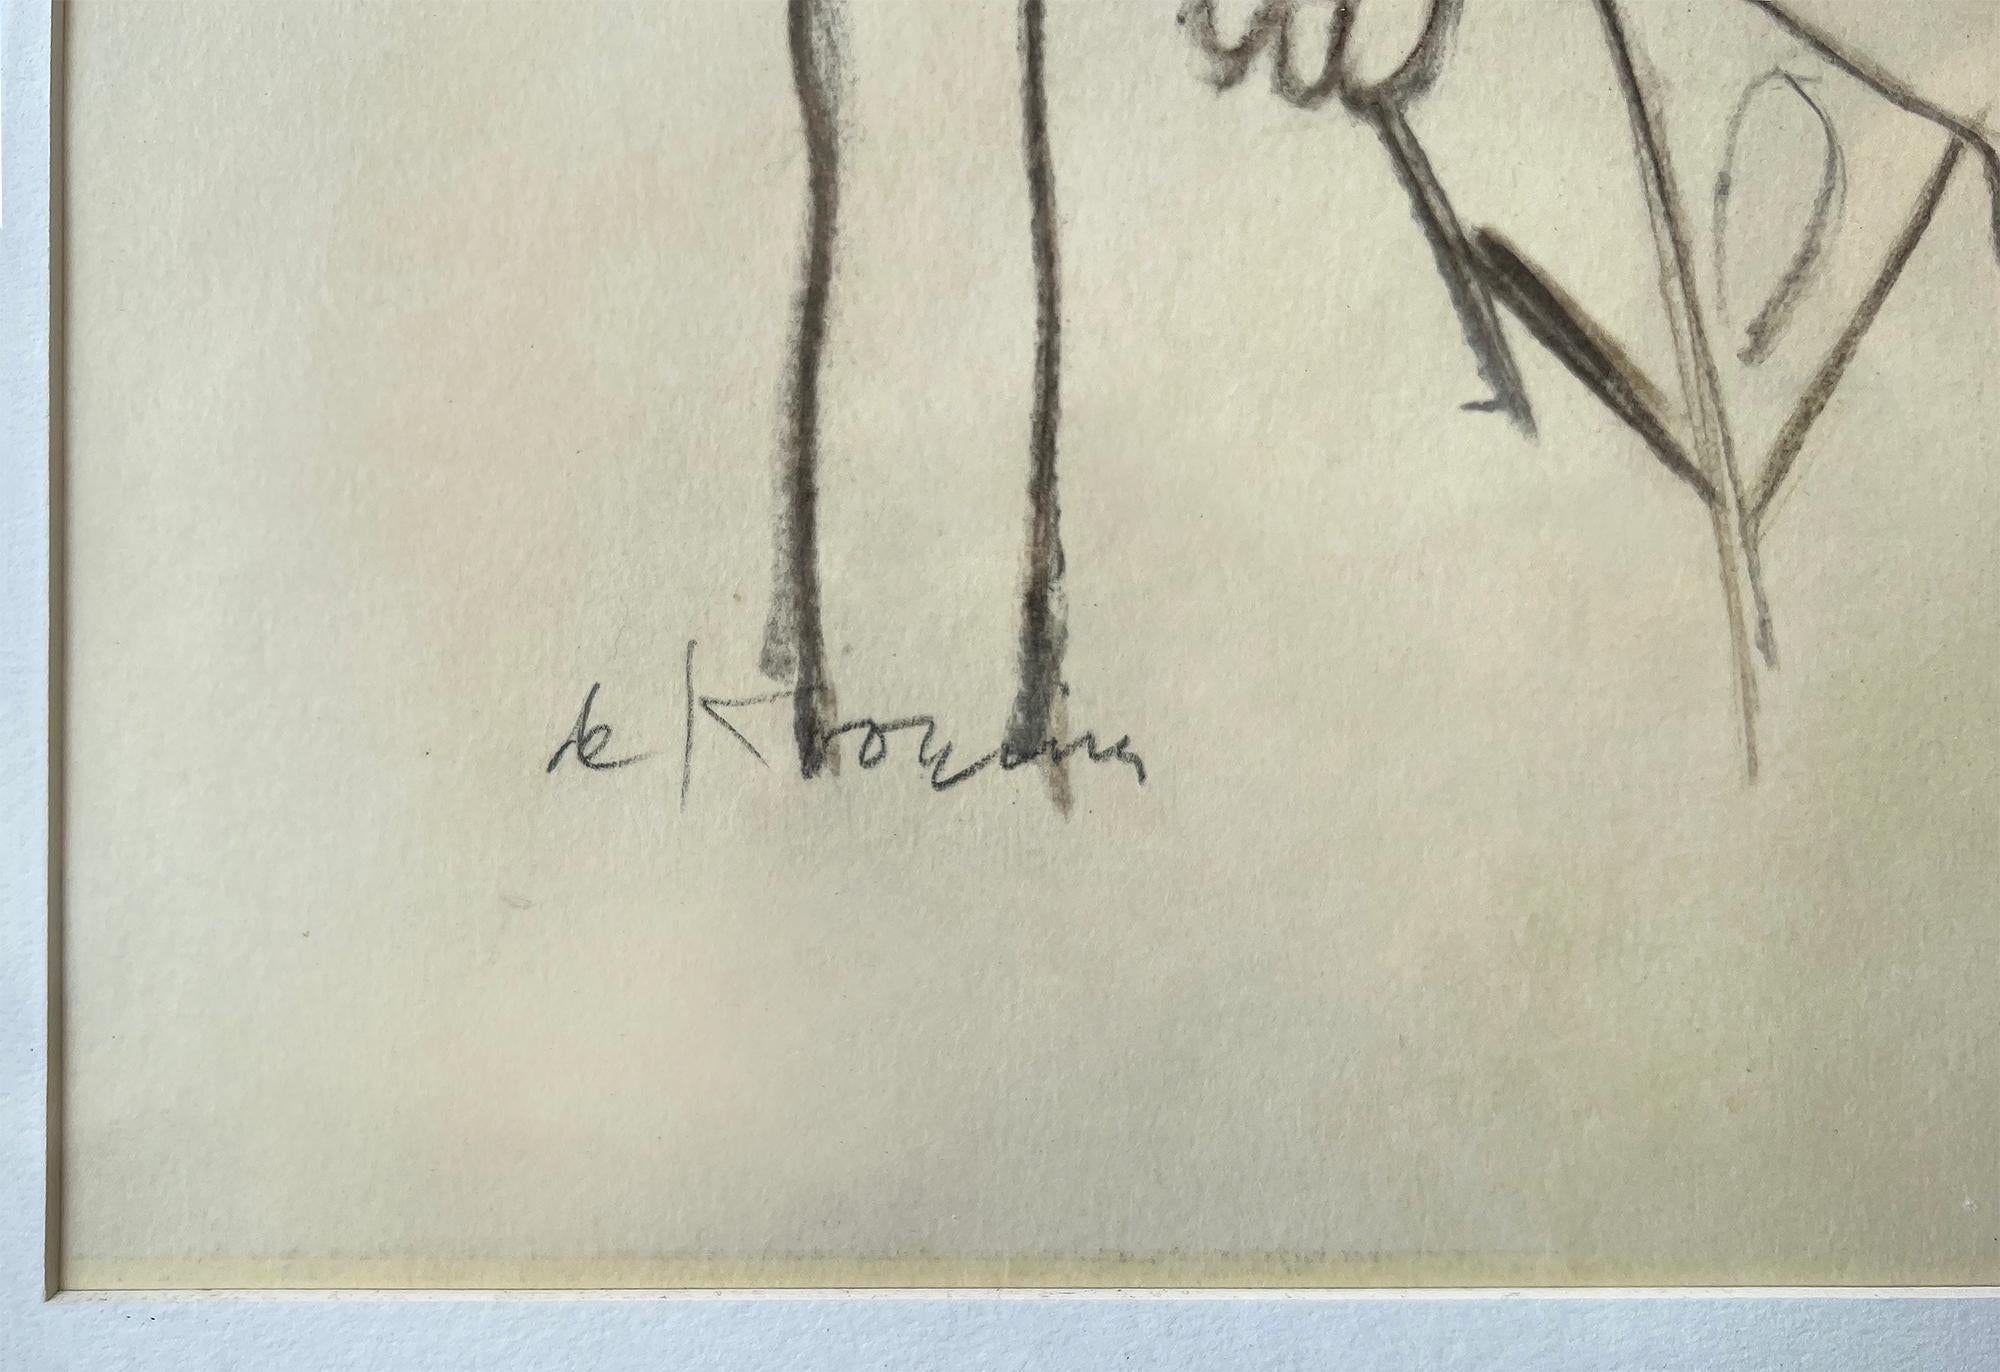 Eine große Kohle-auf-Papier-Darstellung von einem der wohl einflussreichsten Künstler Amerikas.   Sie stammt von der bahnbrechenden Allan Stone Galleries, die sich schon früh für Willem de Kooning und die Avantgarde einsetzte. In natura sieht es